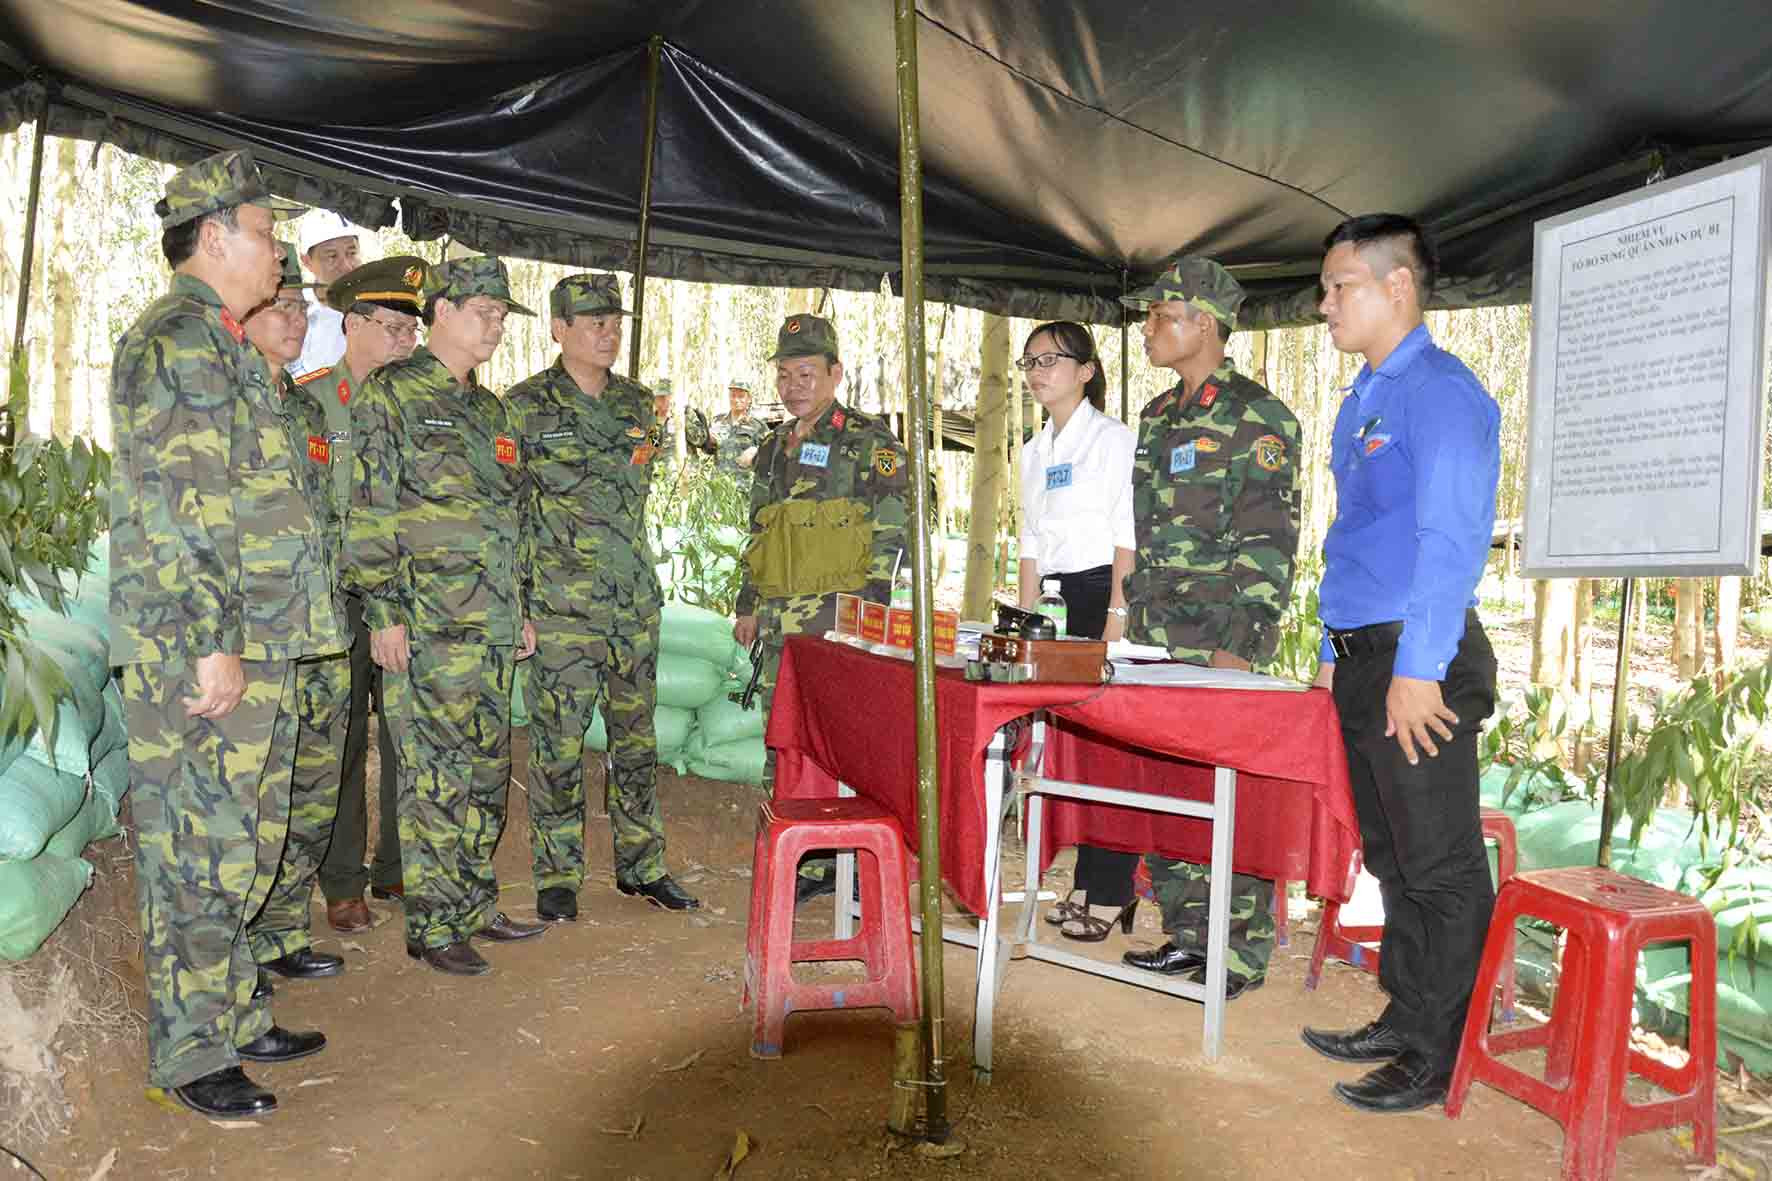 Đồng chí Nguyễn Tấn Tuân và các đồng chí trong Ban chỉ đạo diễn tập tỉnh kiểm tra trạm tiếp nhận quân nhân dự bị.